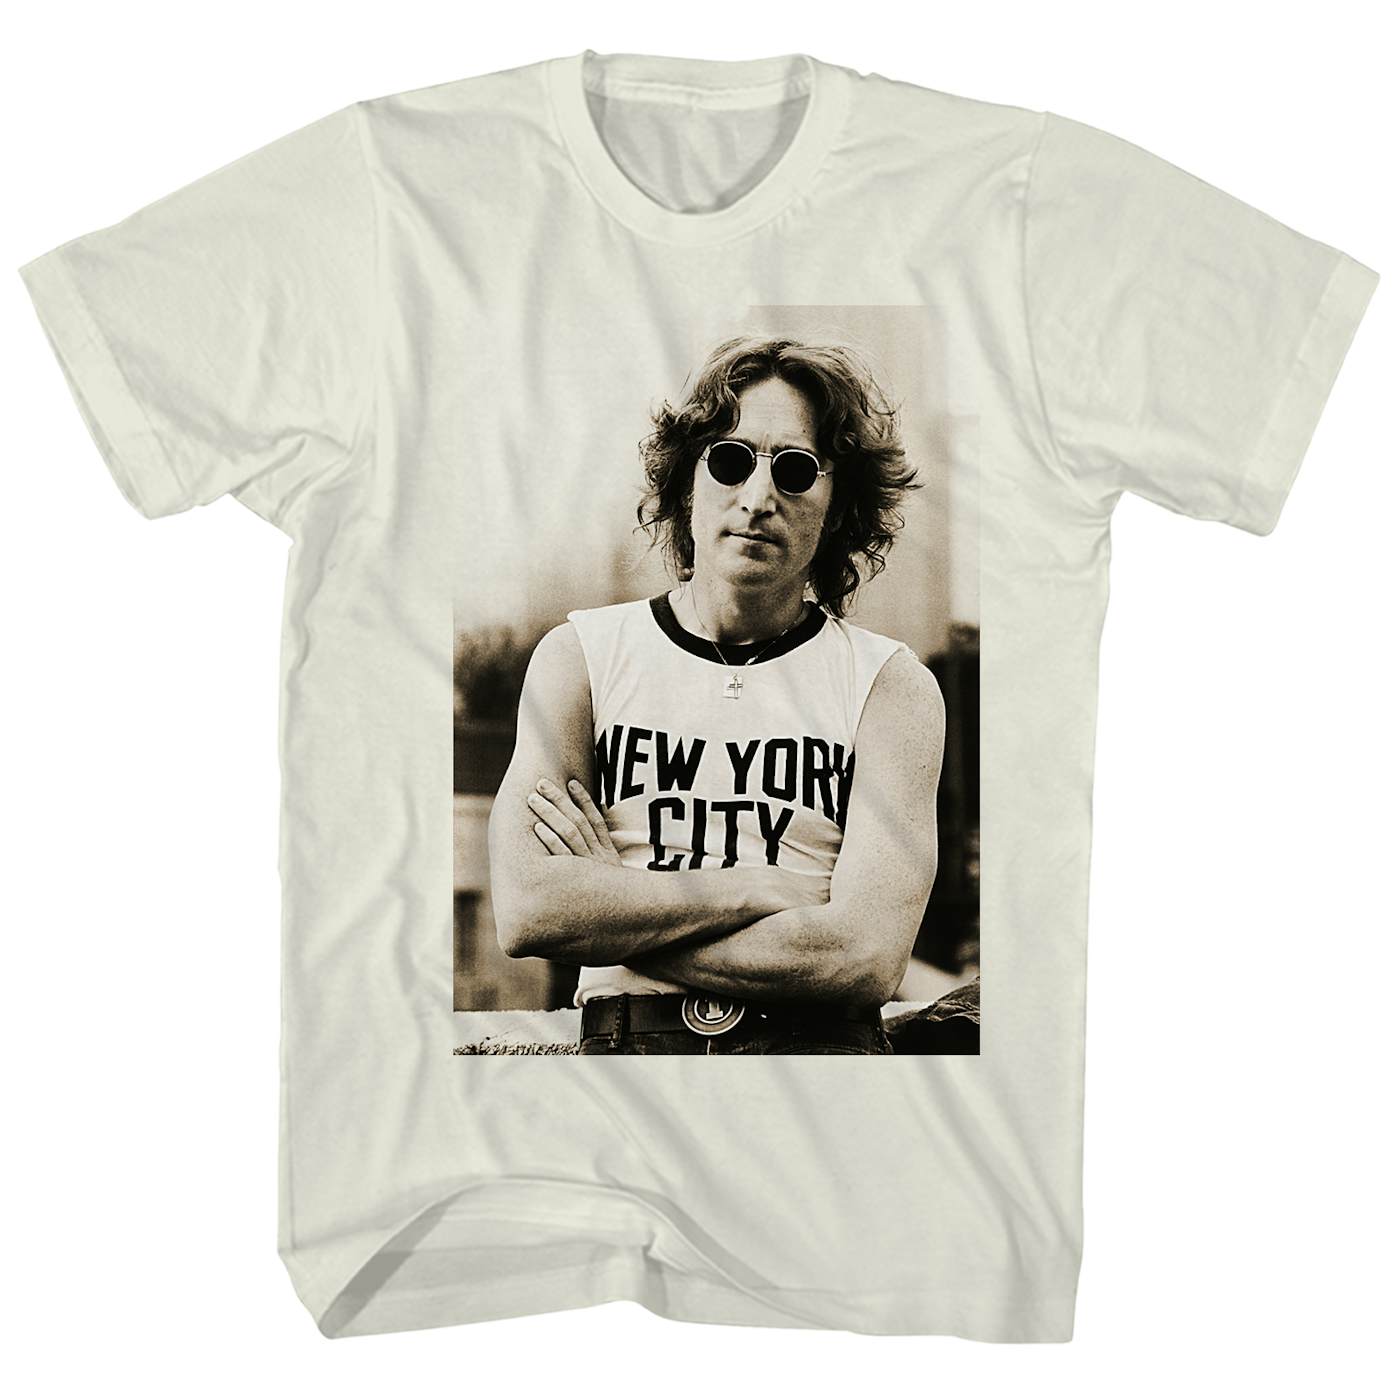 New York City Tee Shirt - John Lennon